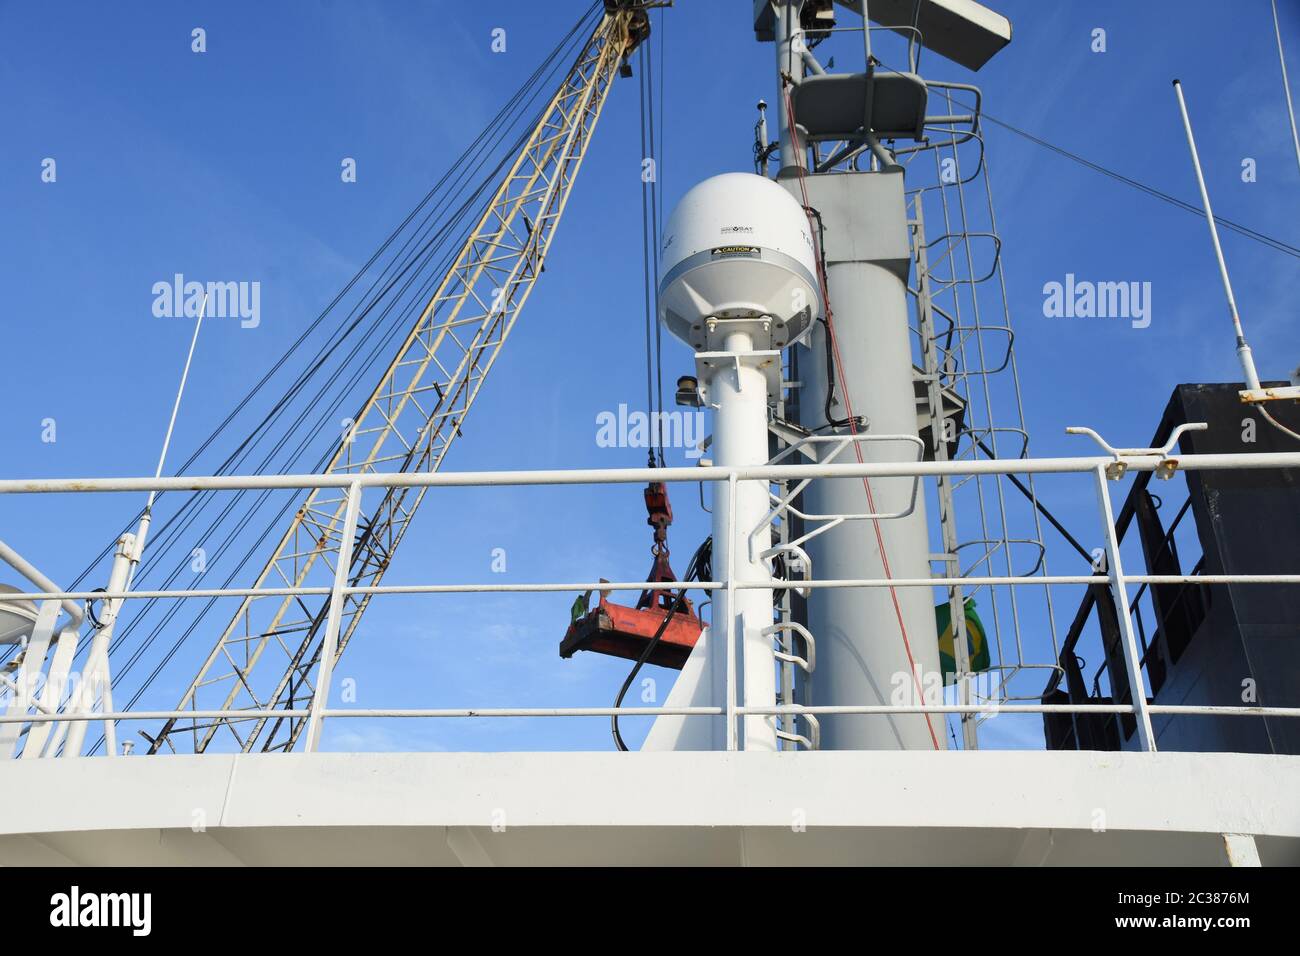 Satellitenantenne mit Radarmast des Handelsschiffes mit dem Ladekran im Hintergrund während des Frachtbetriebs beim Schiff im Hafen Stockfoto